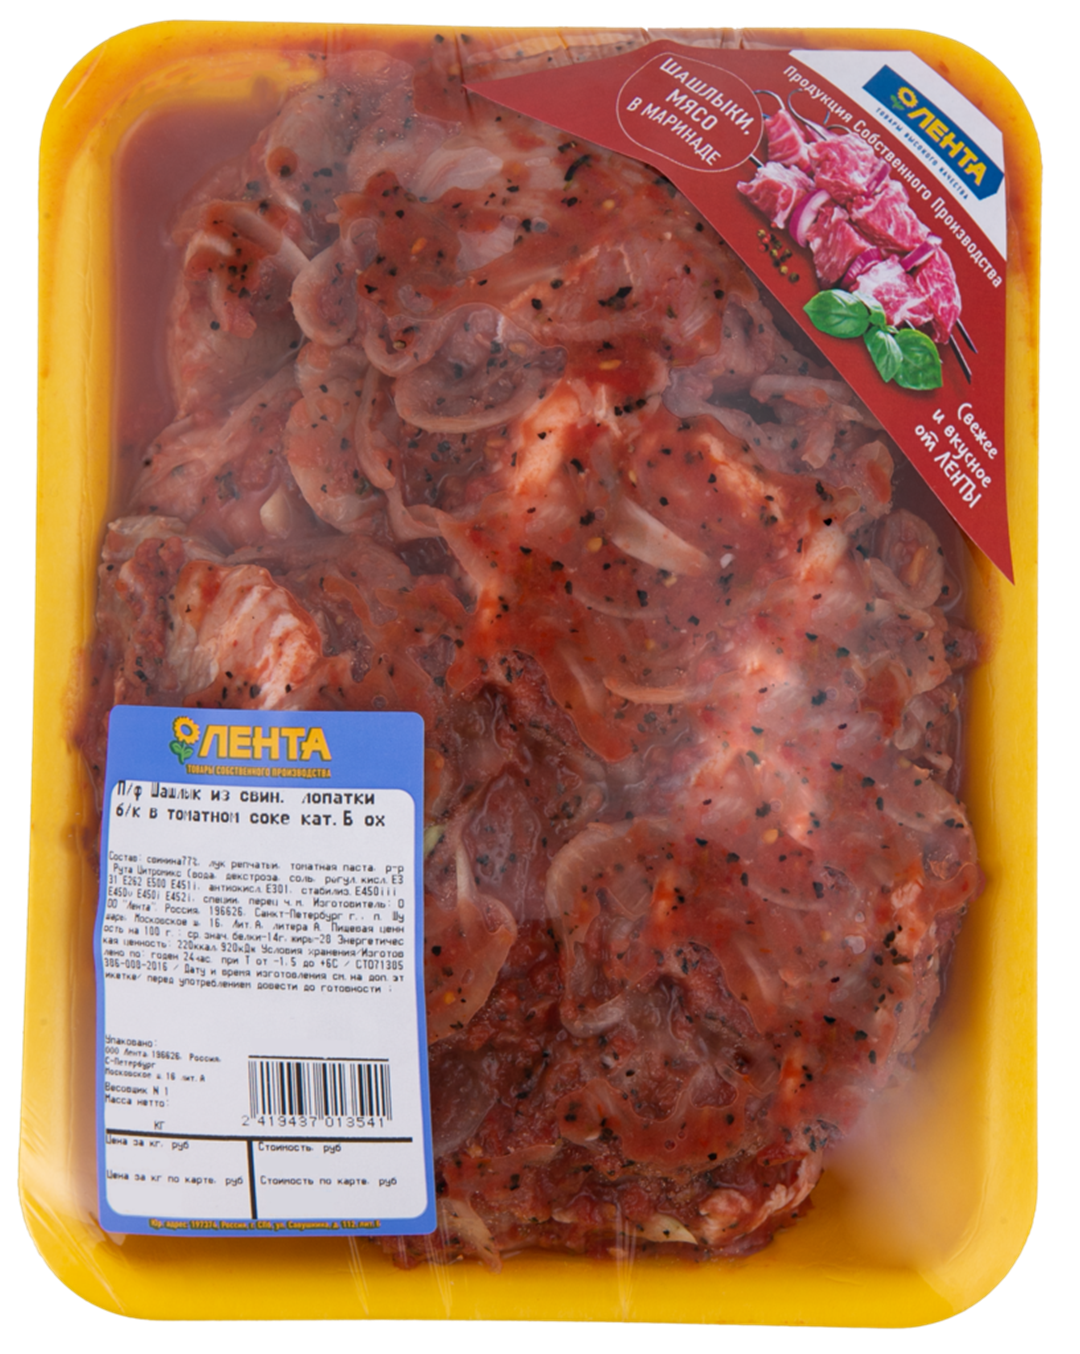 Шашлык из свиной лопатки в томатном соке охлажденный -1 кг